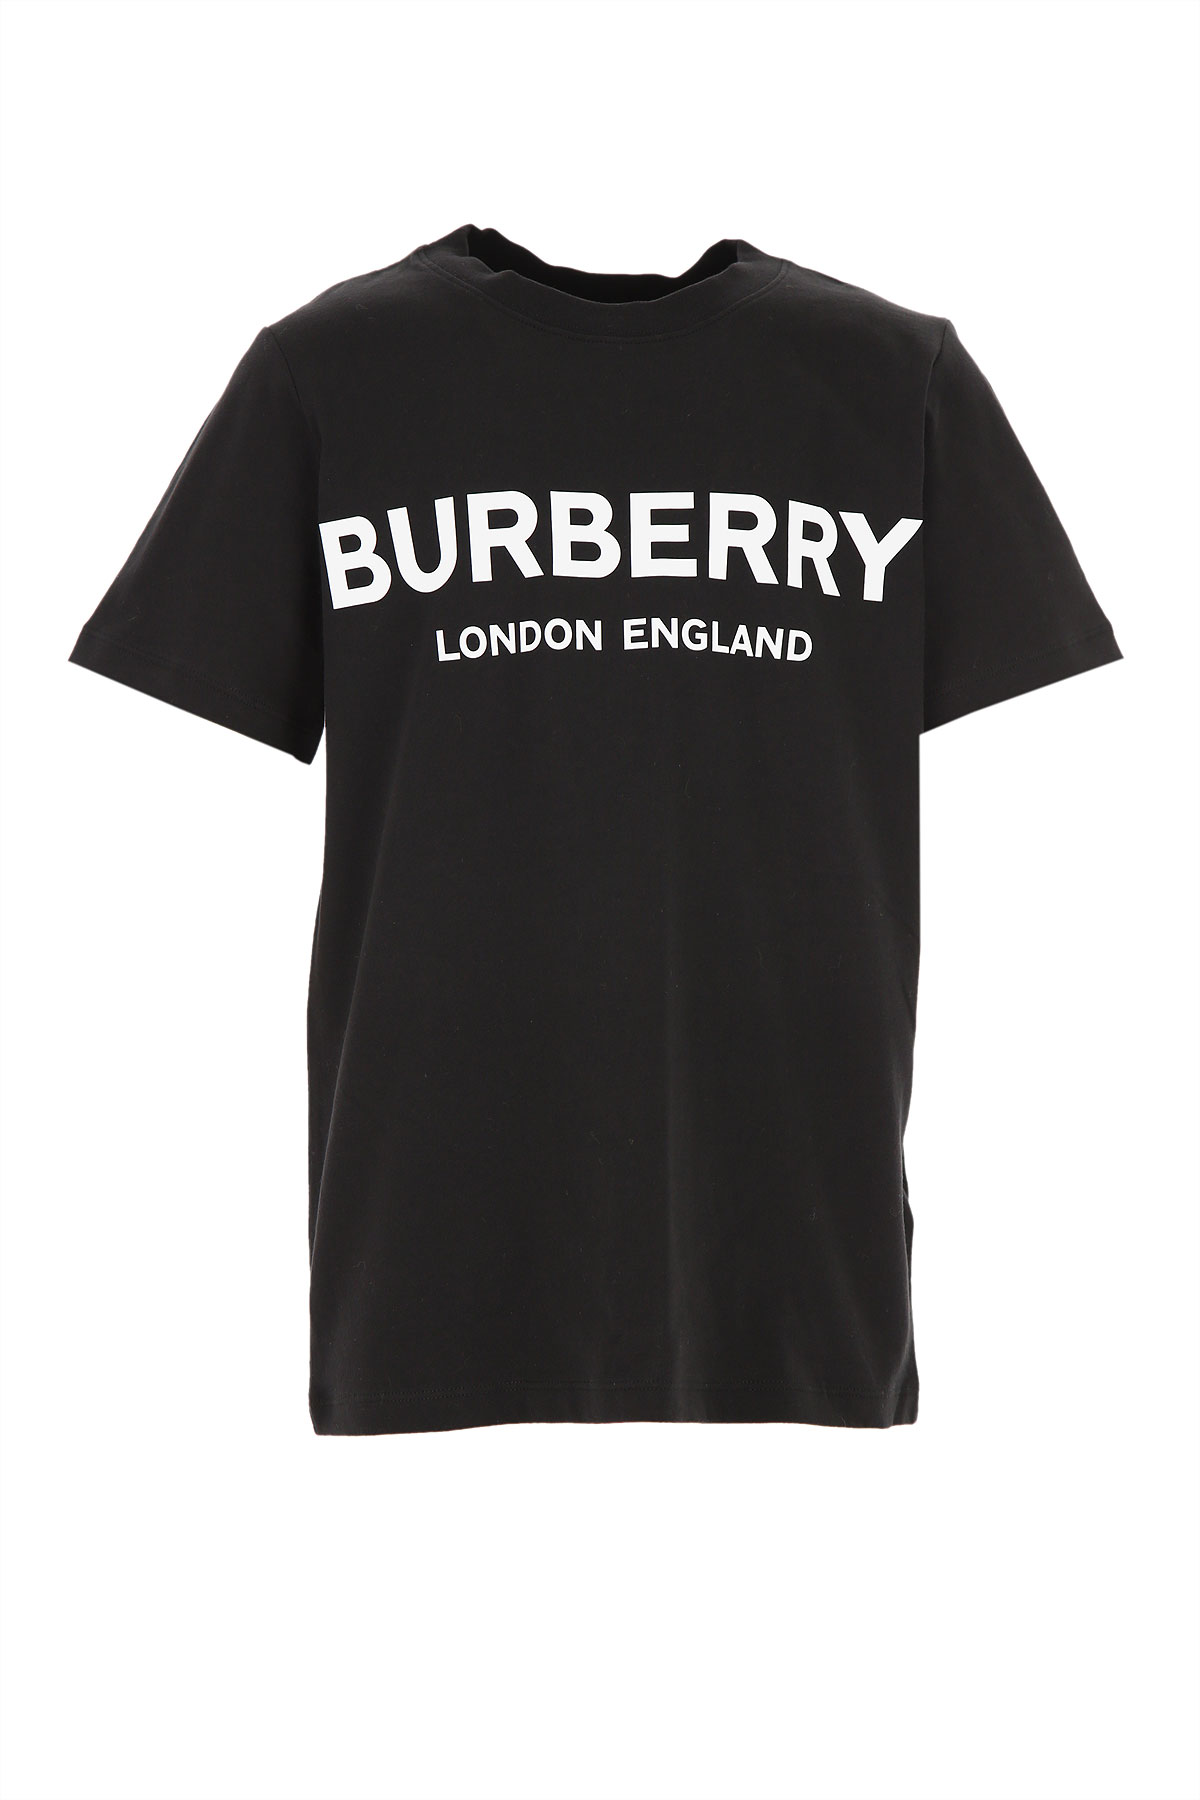 Burberry Kinder T-Shirt für Jungen Günstig im Sale, Schwarz, Baumwolle, 2017, 10Y 12Y 6Y 8Y